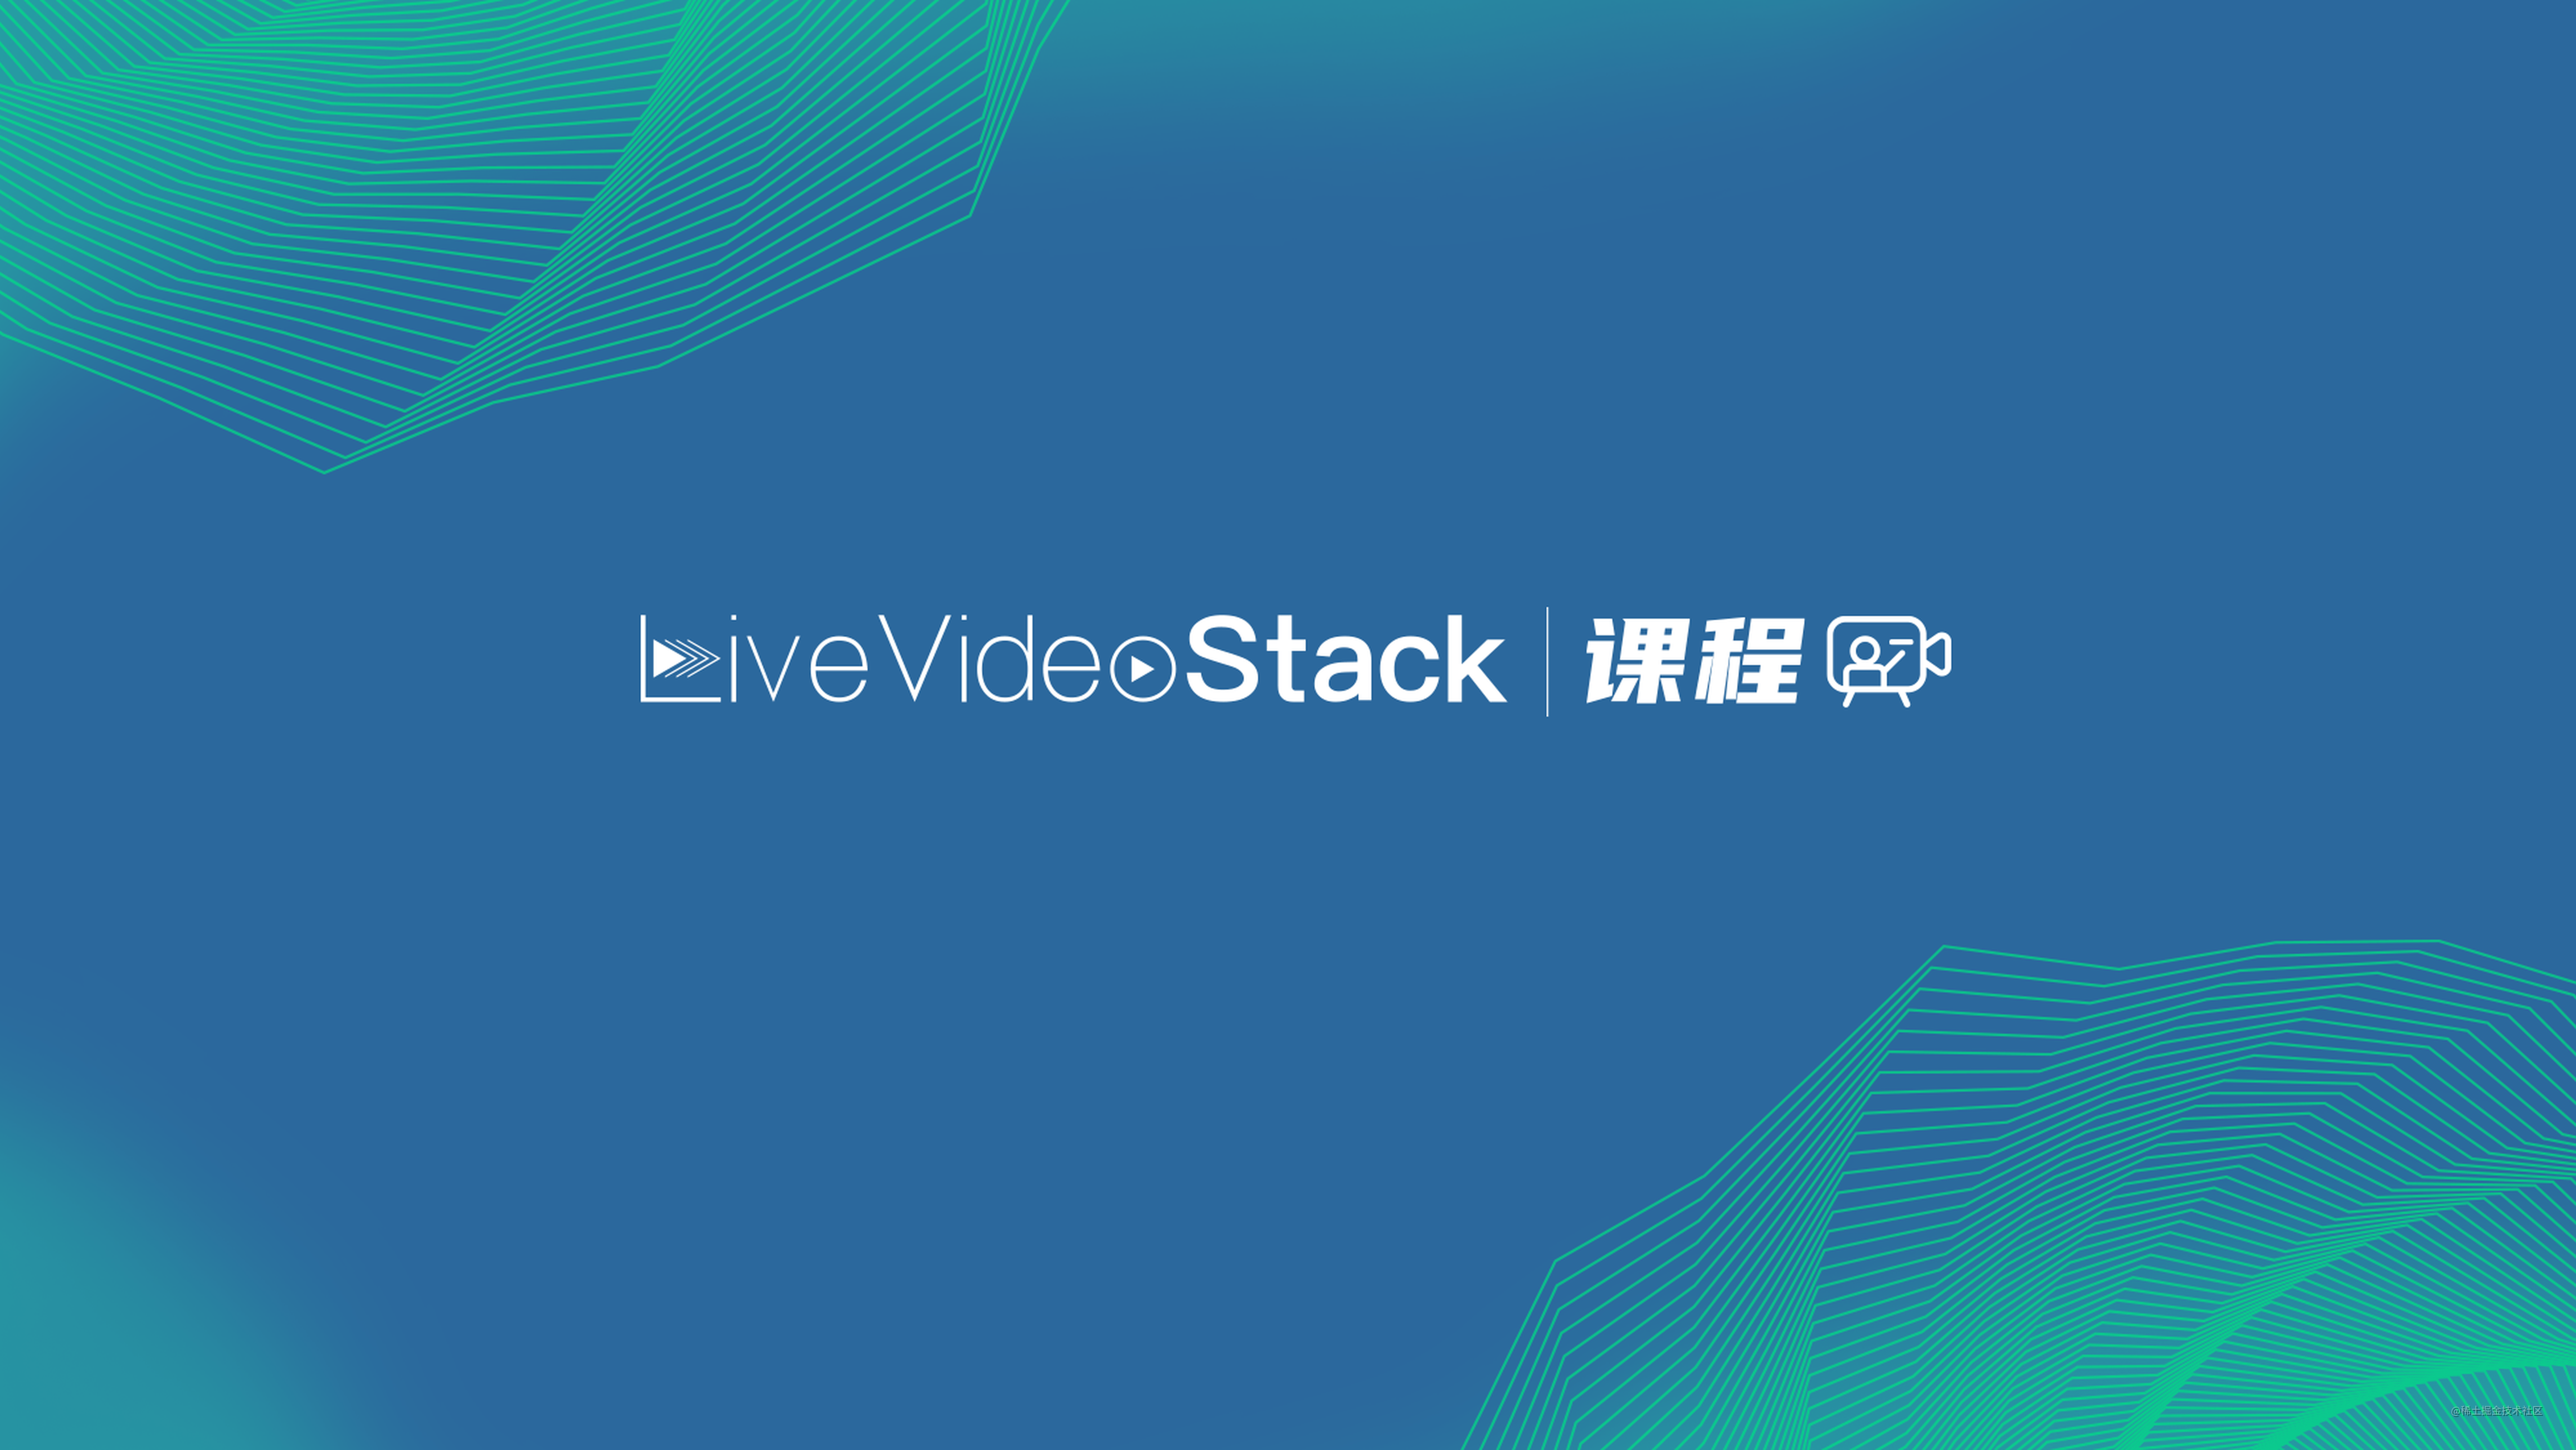 为什么要做LiveVideoStack课程？